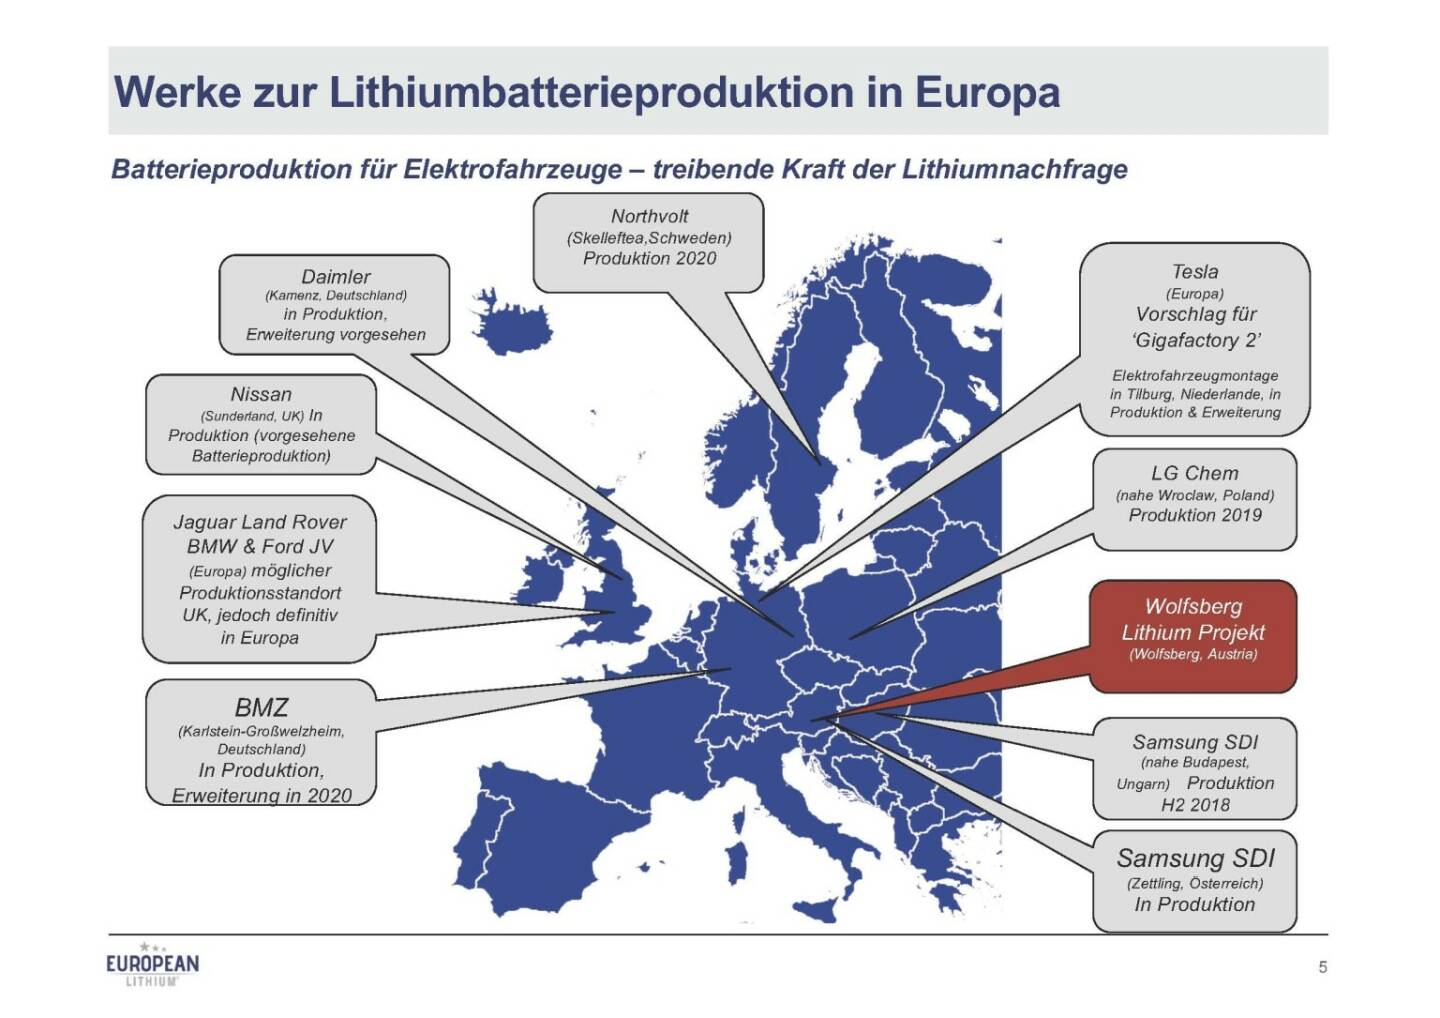 Präsentation European Lithium - Werke